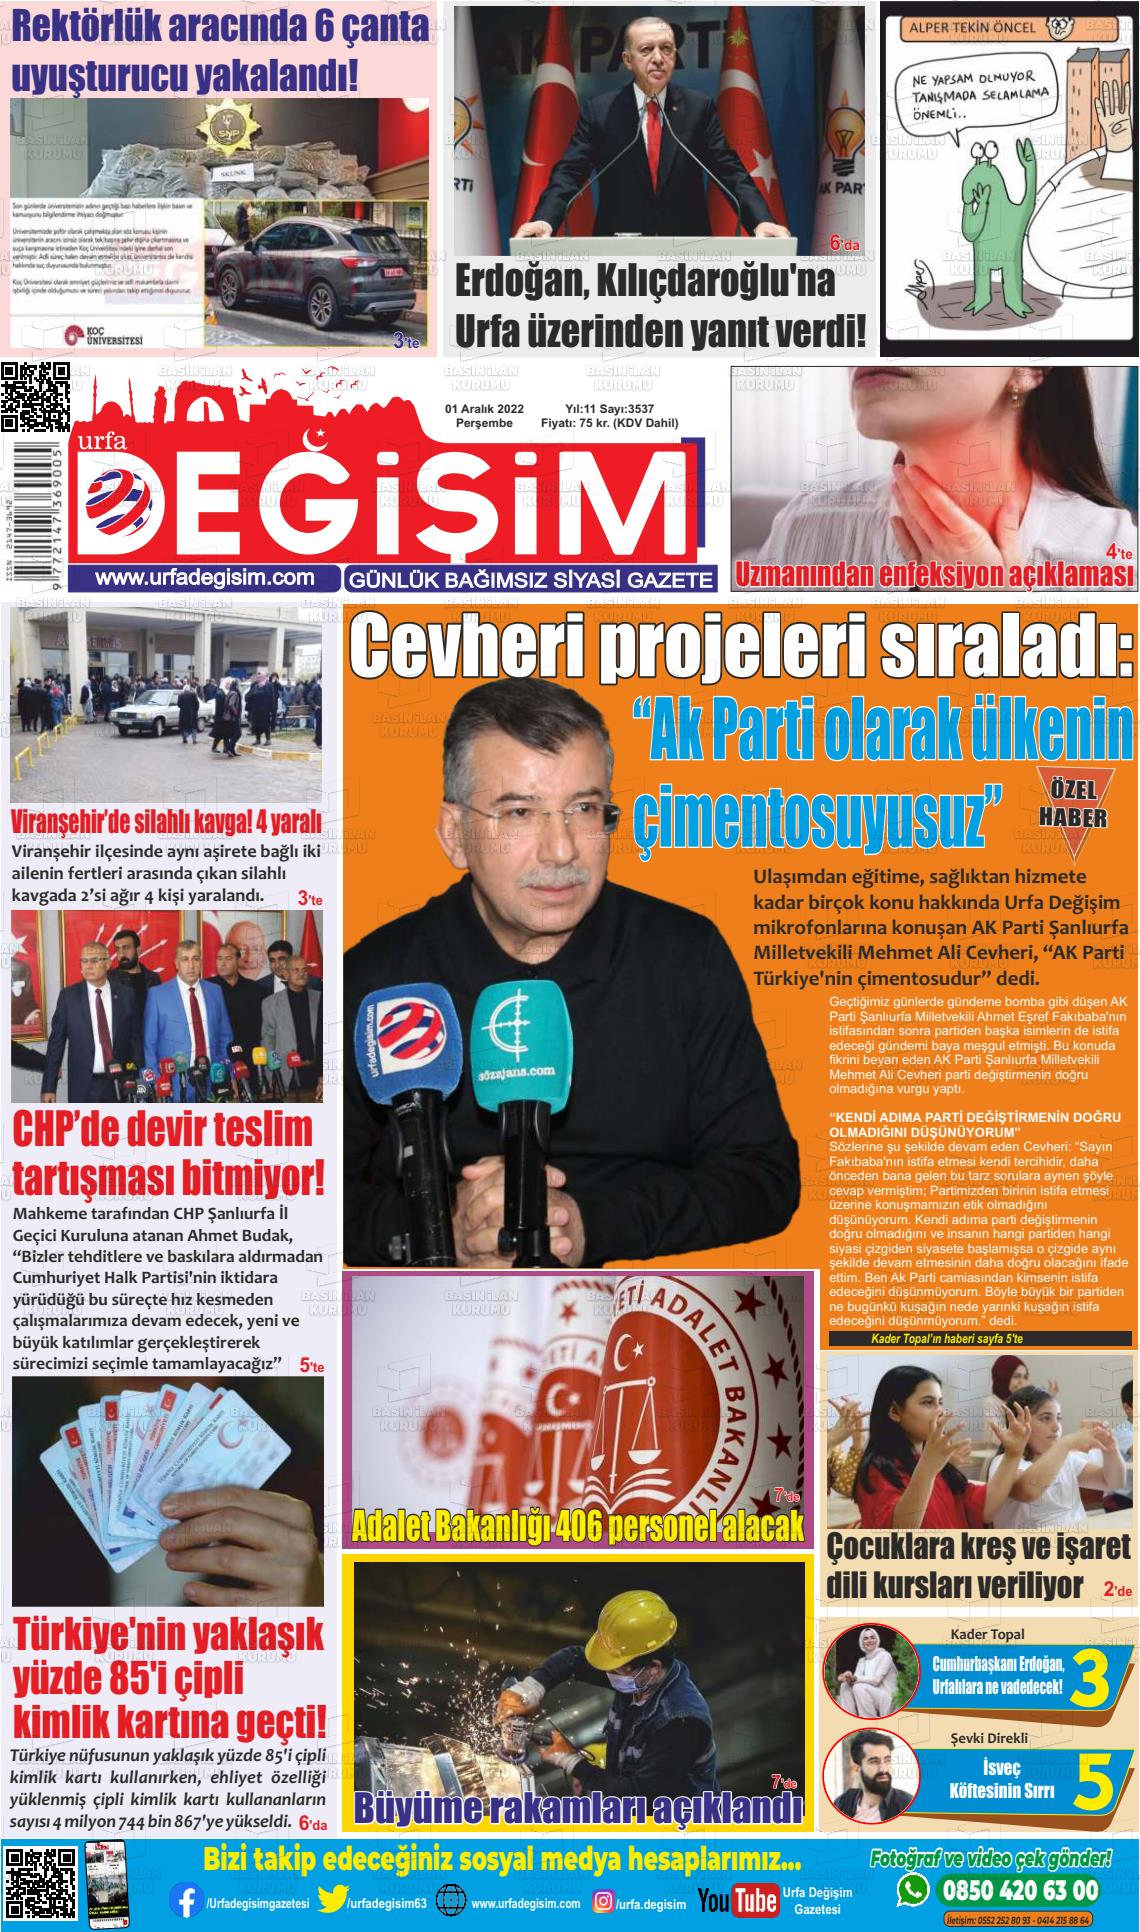 01 Aralık 2022 Urfa Değişim Gazete Manşeti